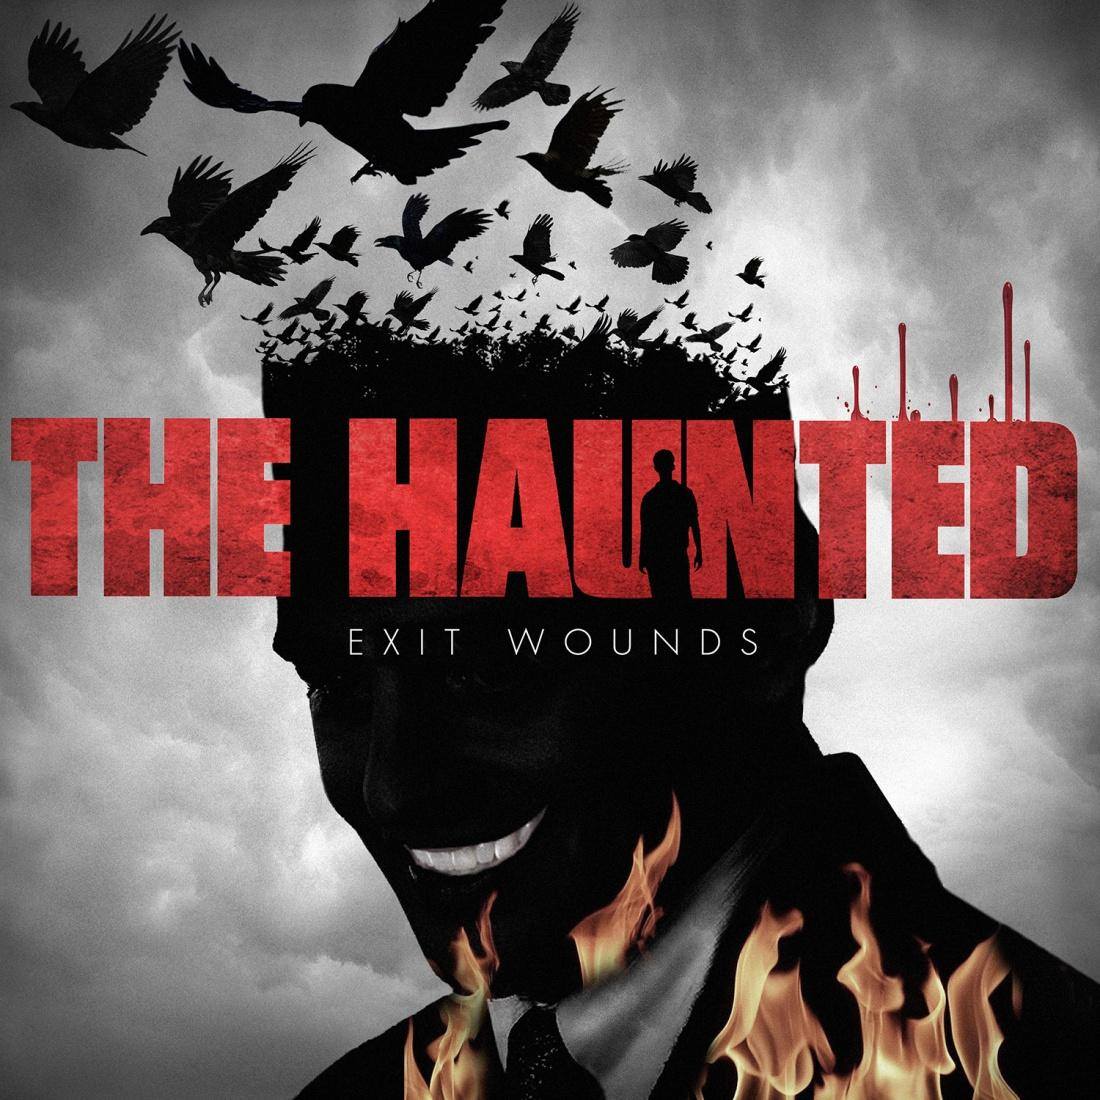 The Haunted Exit Wounds - "Cutting Teeth" el nuevo vídeo de THE HAUNTED